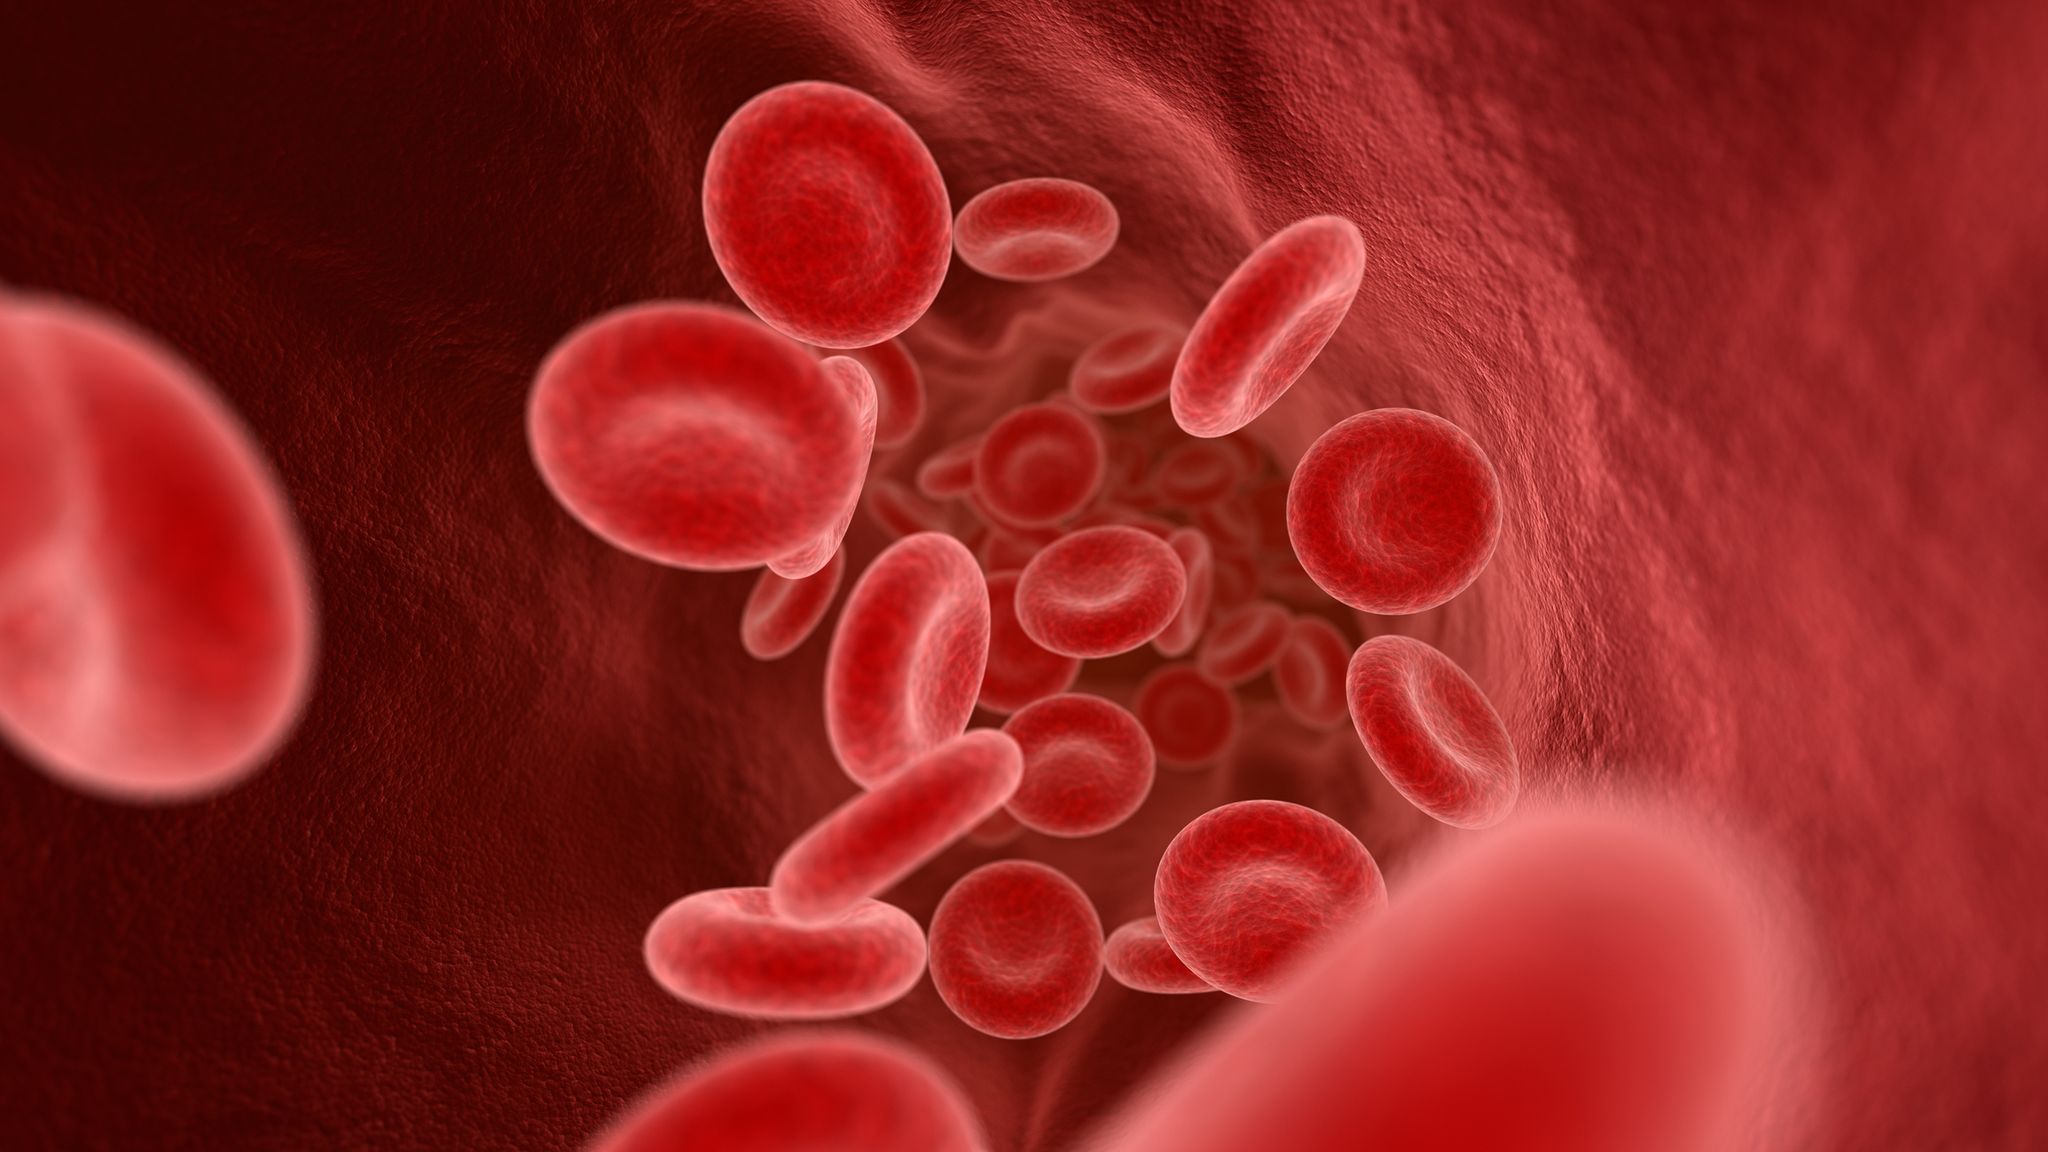 صورة كم عدد خلايا الدم الحمراء التي ينتجها الجسم في اليوم الواحد